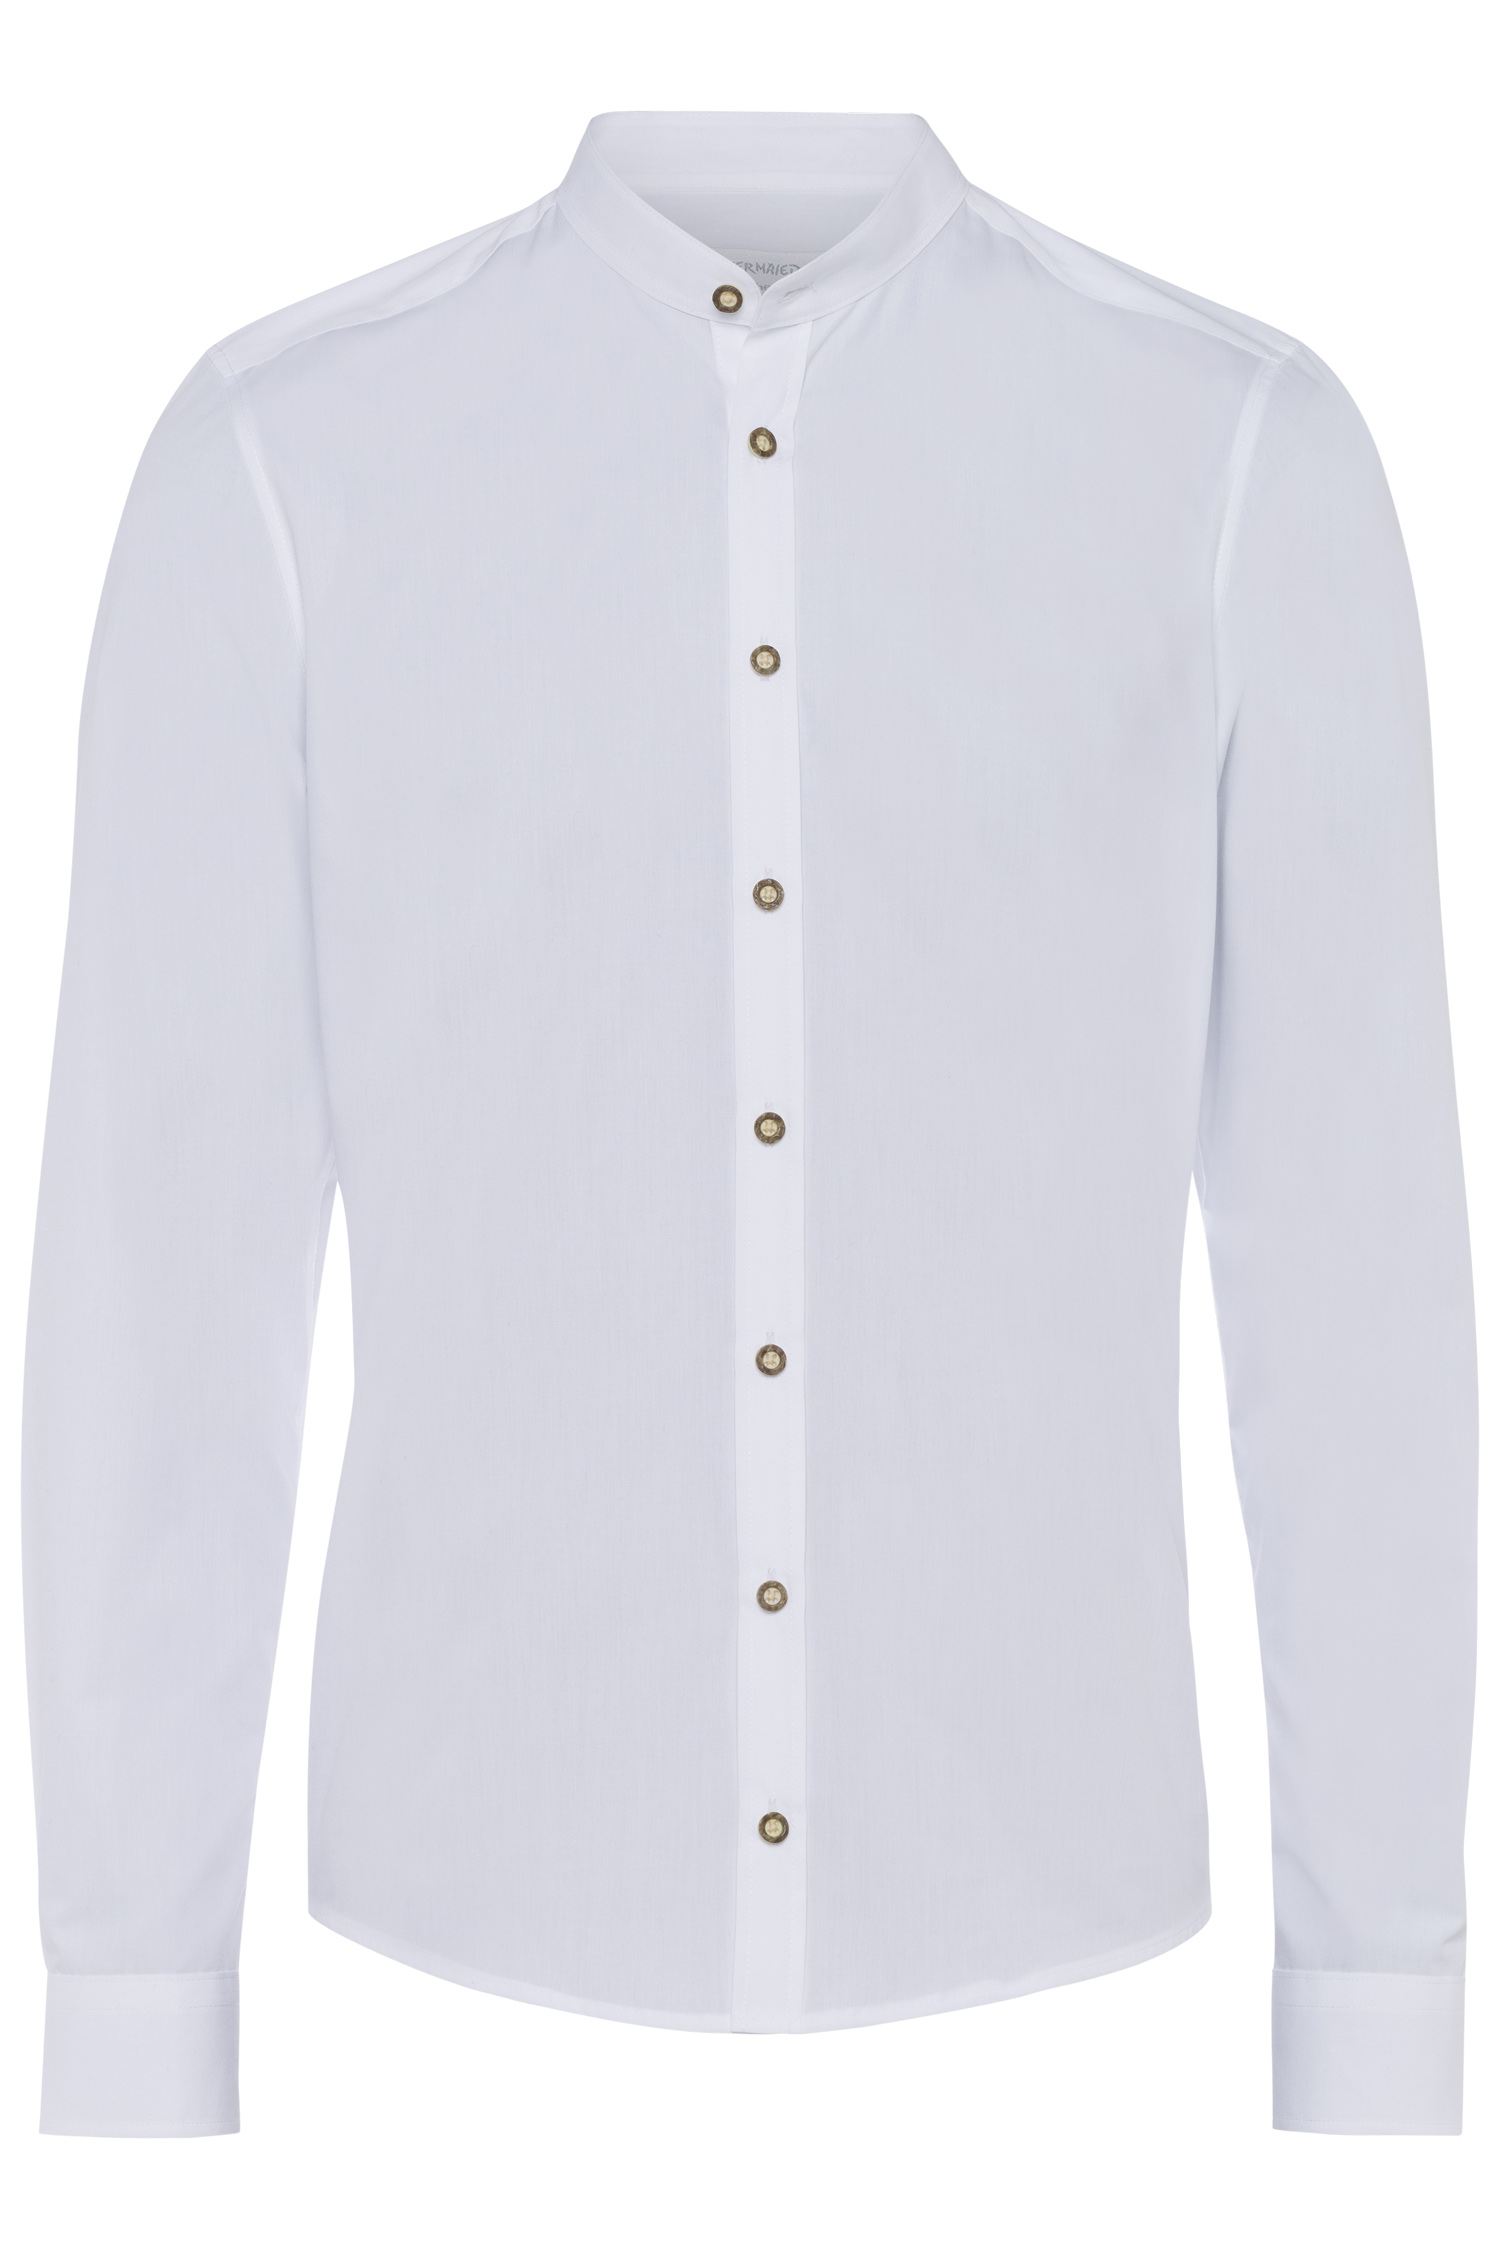 Trachtenhemd Stehkragen modern fit XL | 900 uni weiß